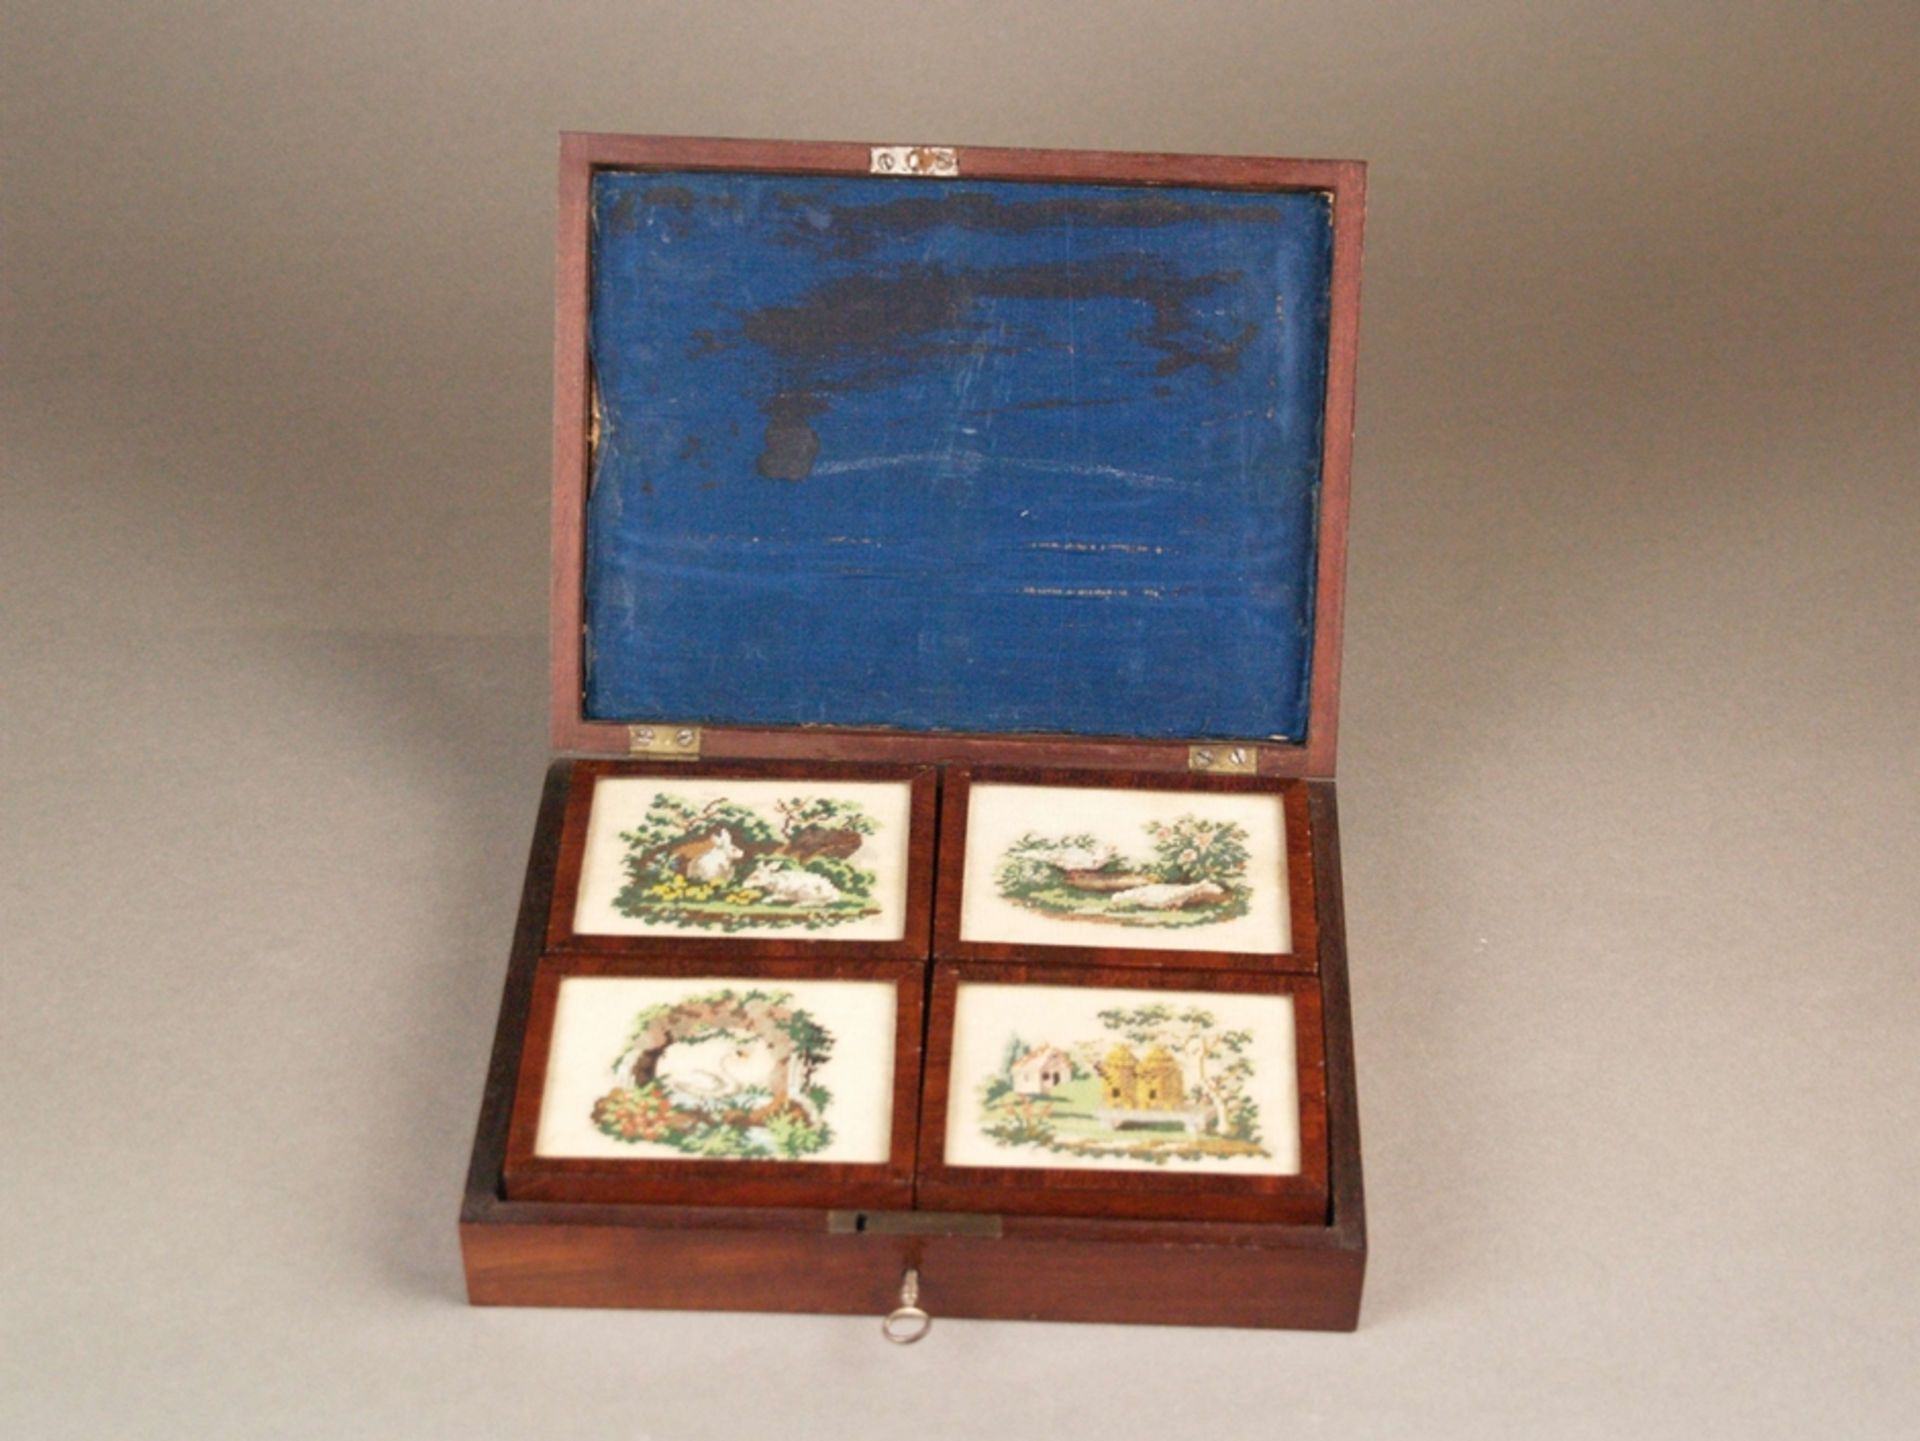 Schatulle mit Perlmuttfiguren - um 1840, rechteckige Schatulle mit vier kleinen Deckeldosen, darin - Bild 3 aus 6